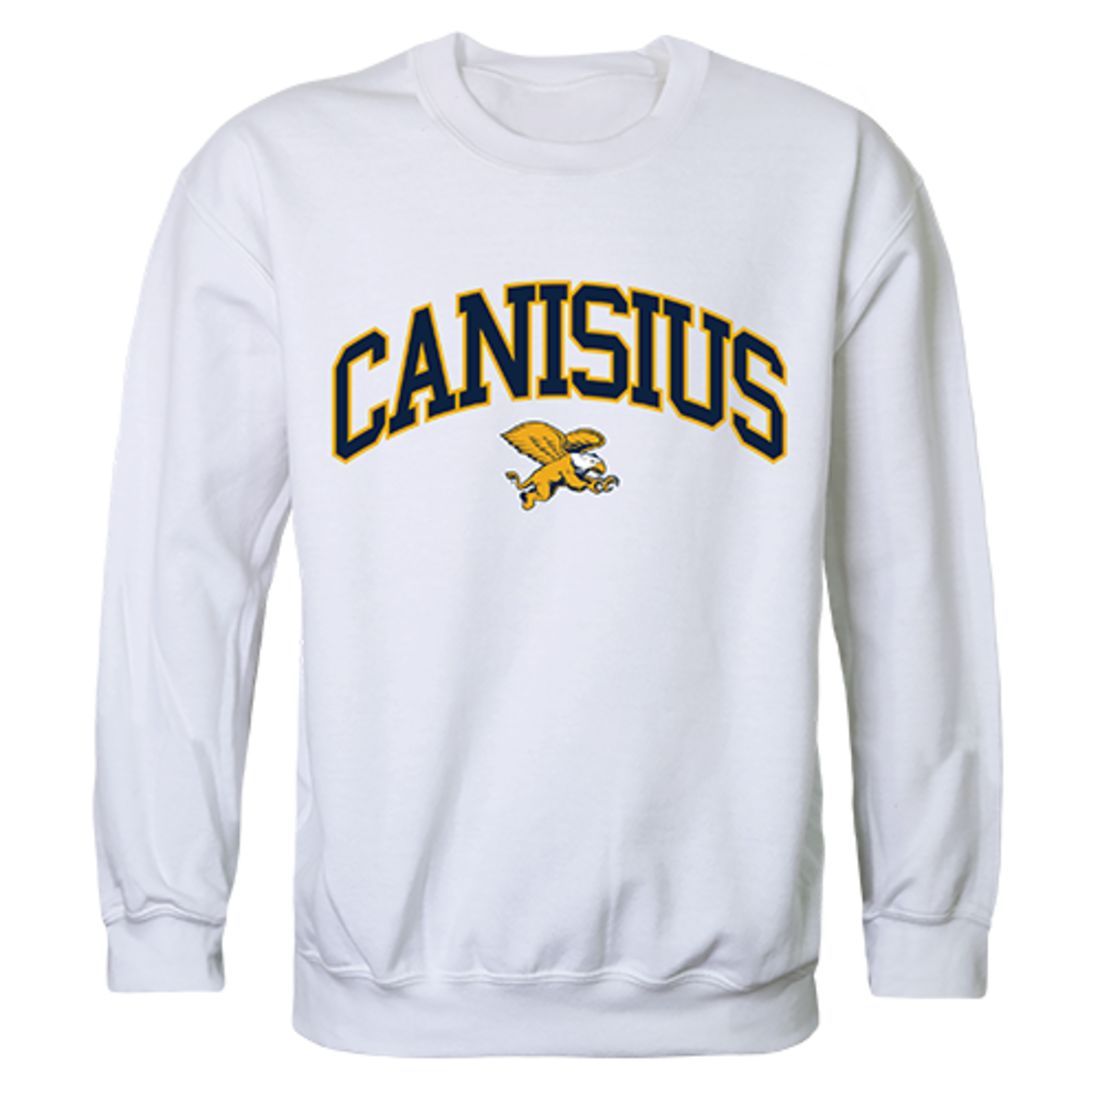 Canisius College Campus Crewneck Pullover Sweatshirt Sweater White-Campus-Wardrobe